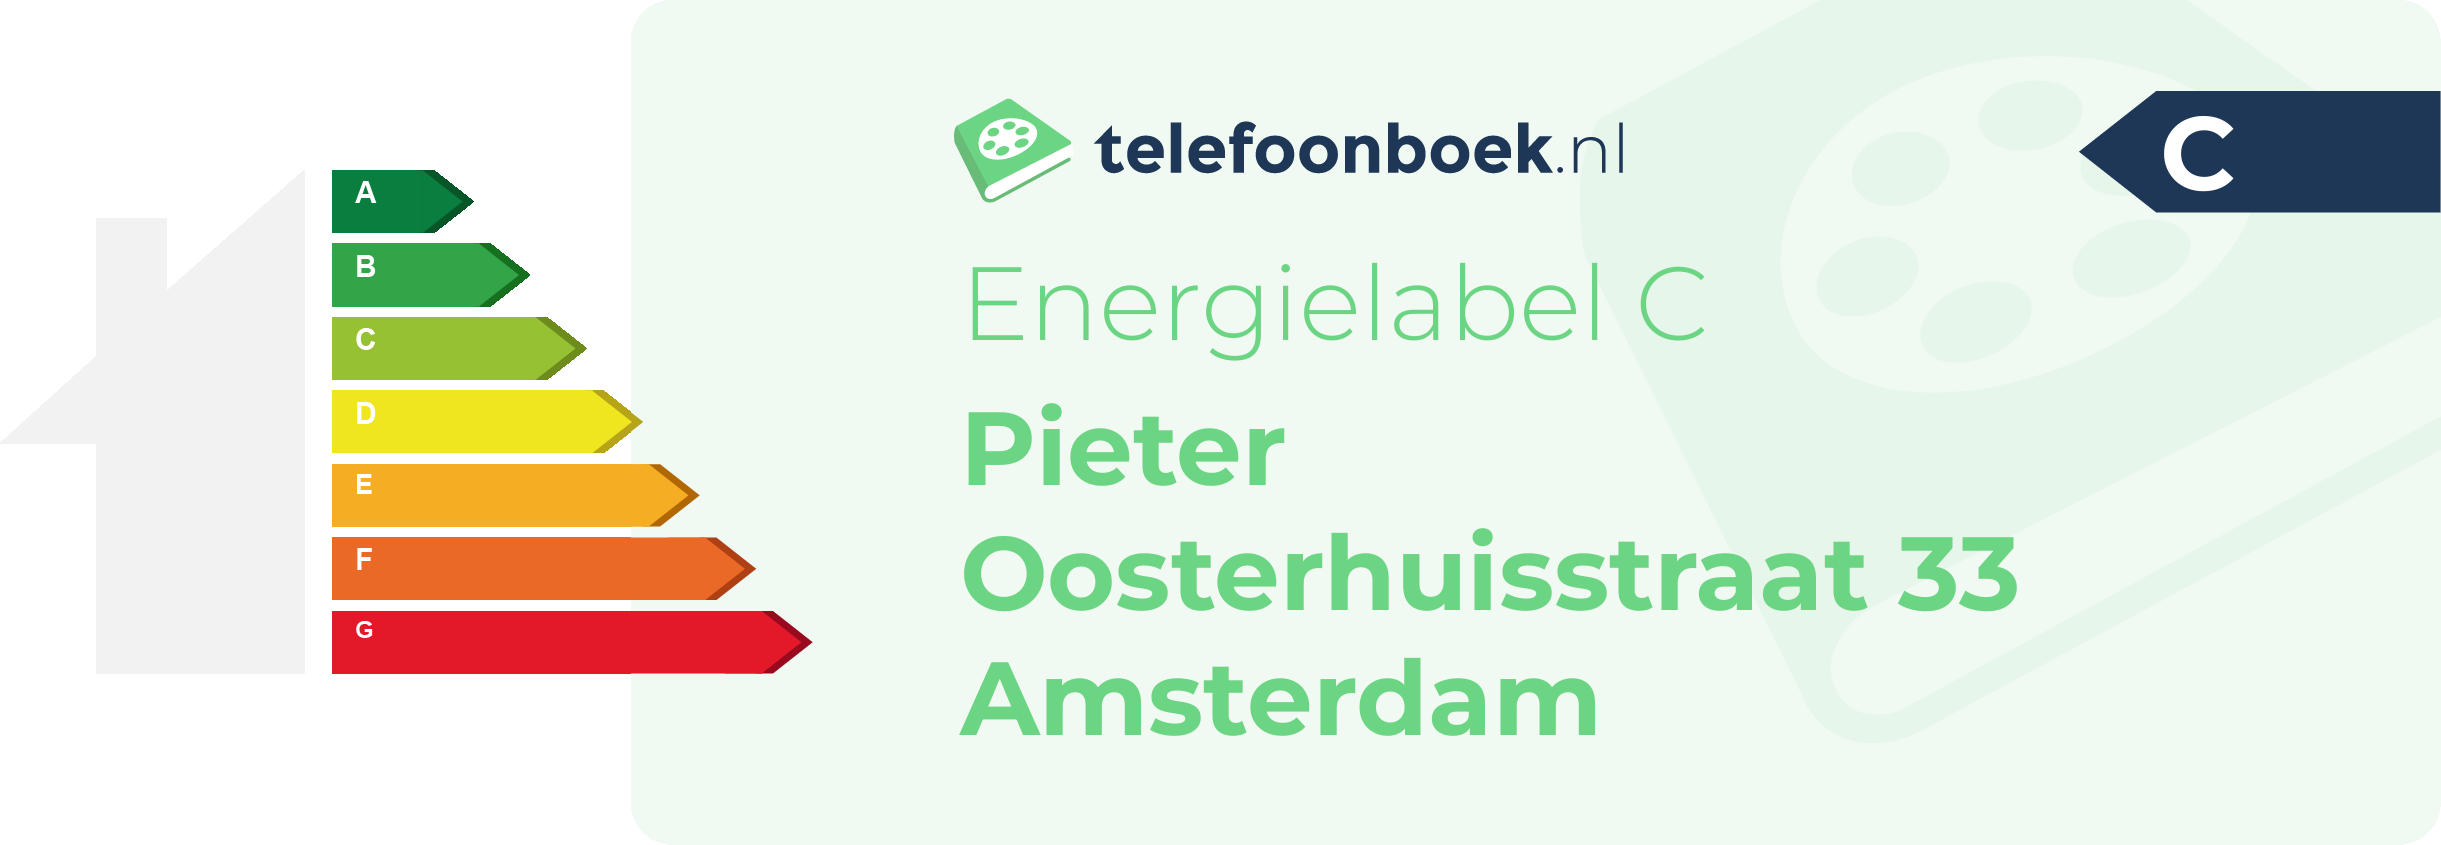 Energielabel Pieter Oosterhuisstraat 33 Amsterdam